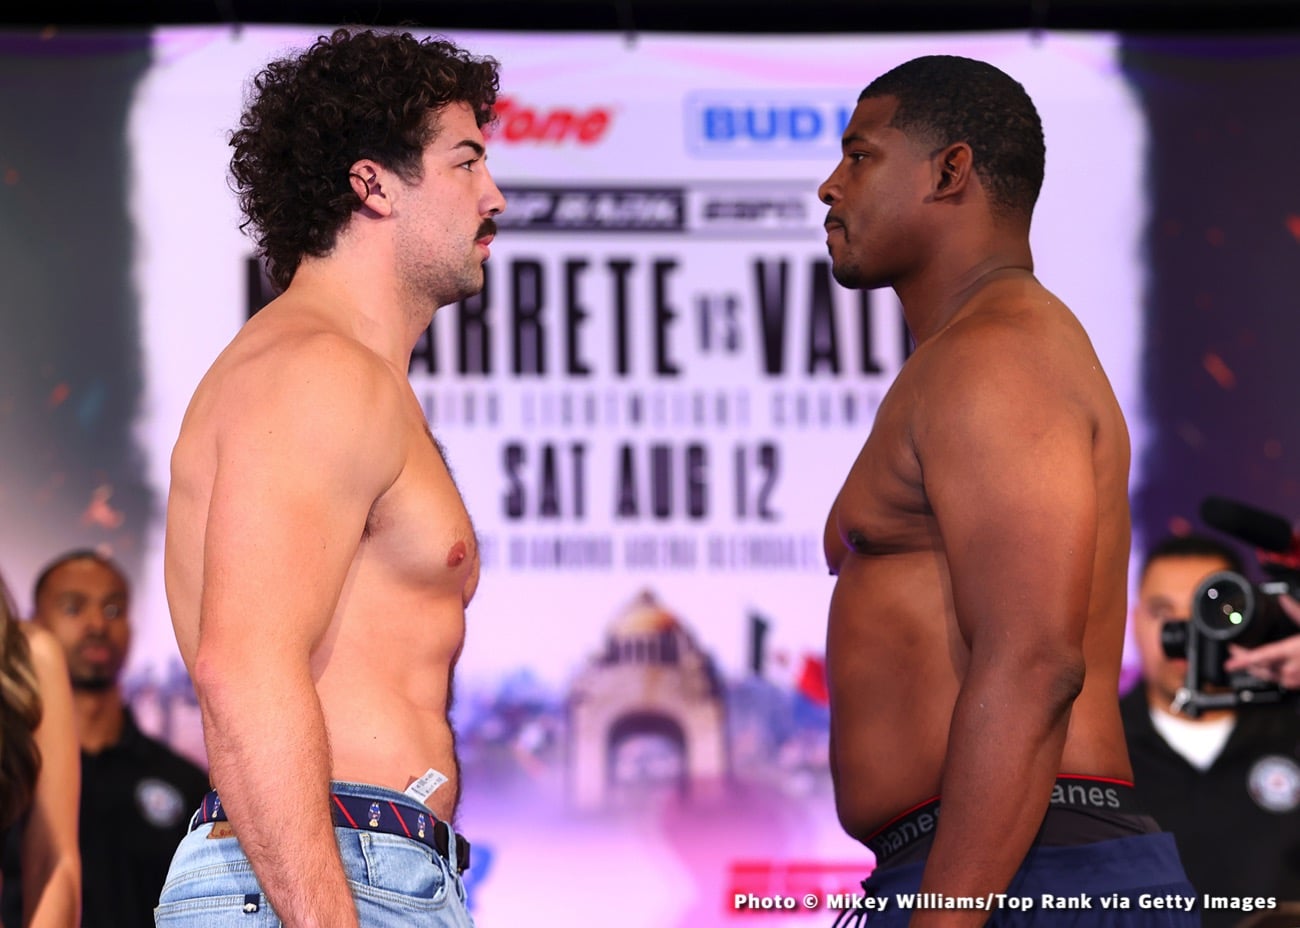 Image: Emanuel Navarrete 130 vs. Oscar Valdez 129.8 - Official ESPN Weights